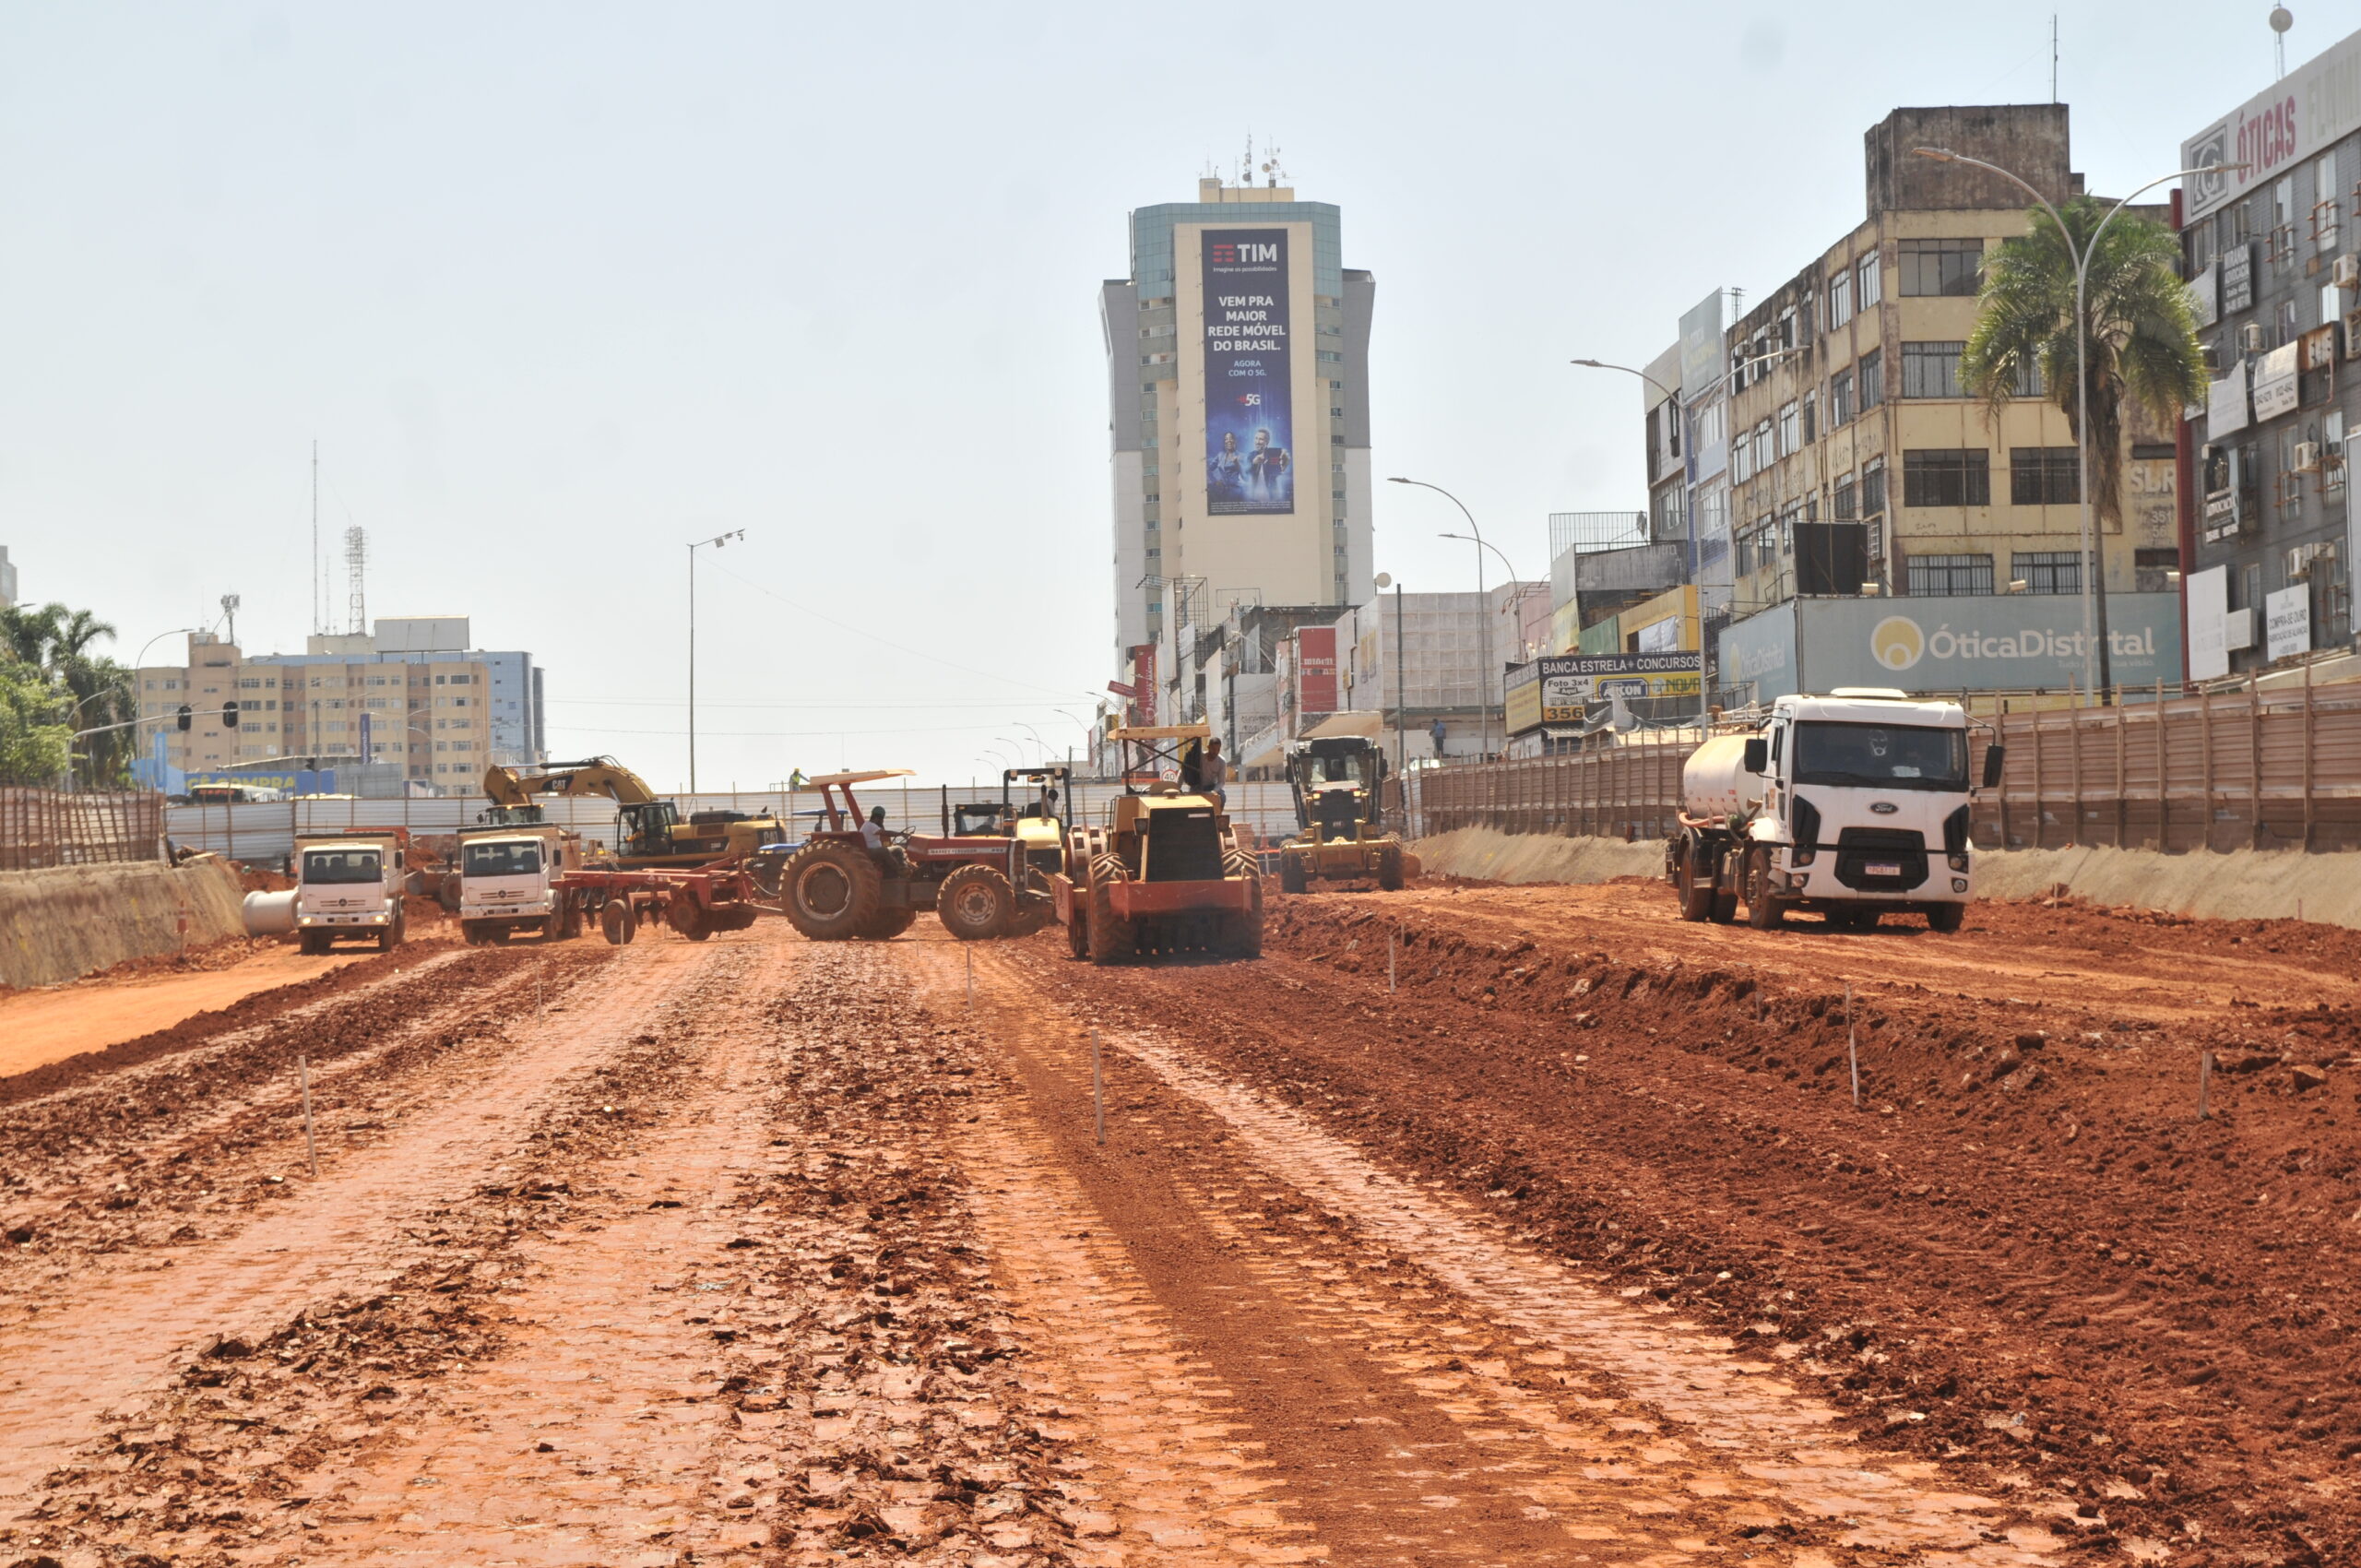 A Patrulha da Terraplanagem é composta por escavadeira, caminhão, motoniveladora, trator, caminhão pipa e rolo compactador | Foto: Lúcio Bernardo Jr/Agência Brasília